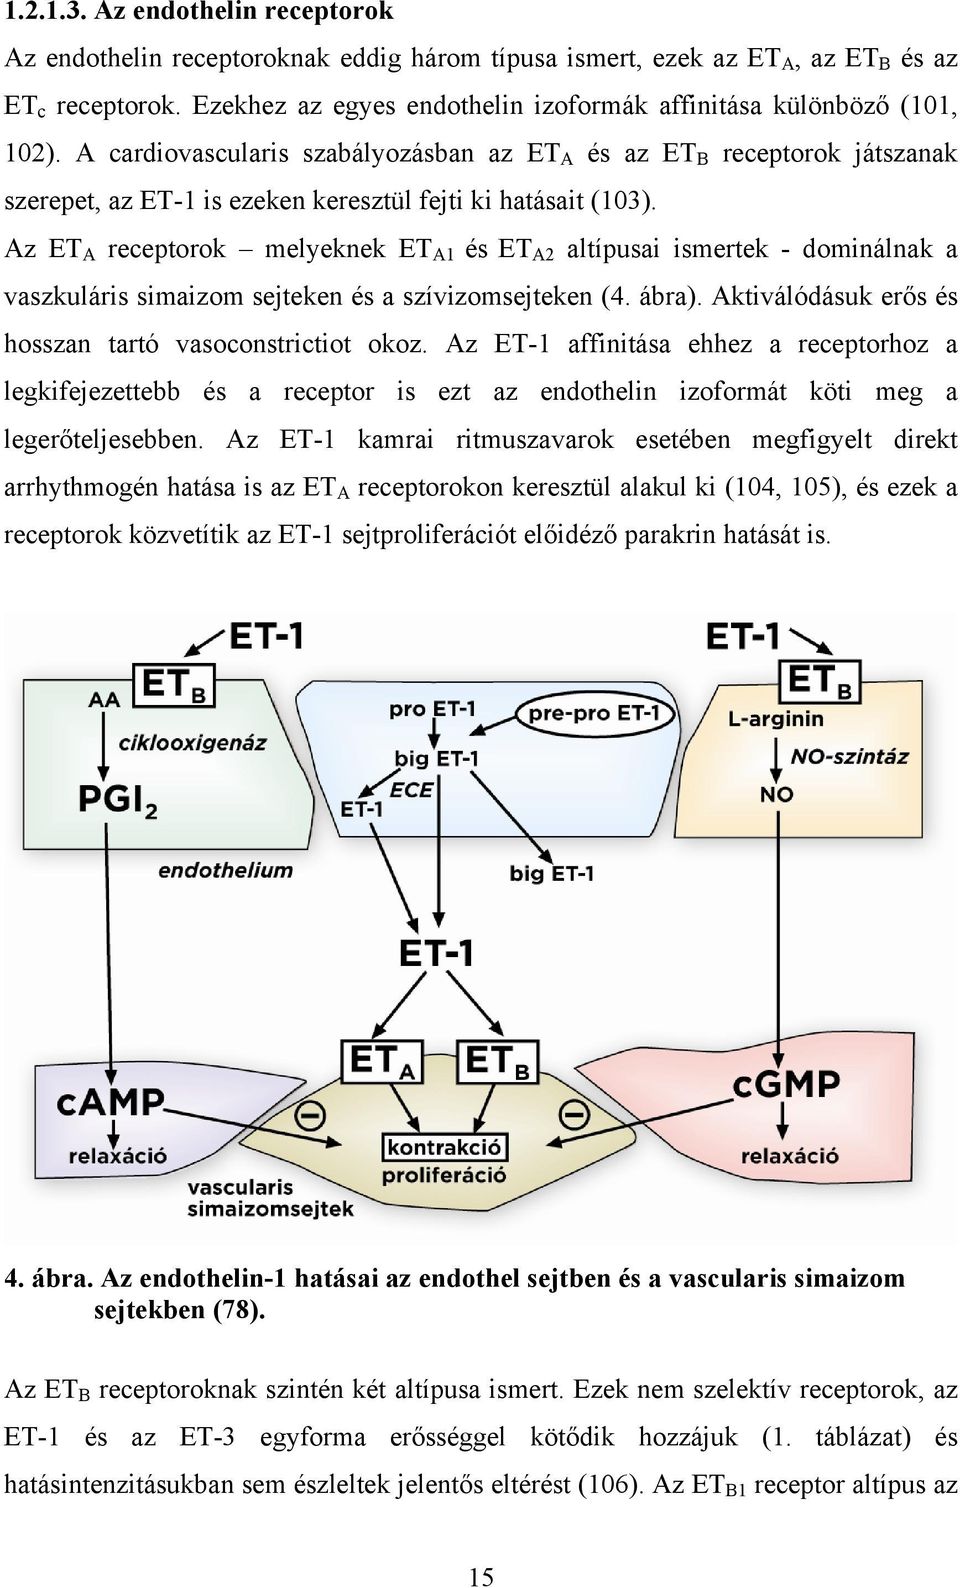 A cardiovascularis szabályozásban az ET A és az ET B receptorok játszanak szerepet, az ET-1 is ezeken keresztül fejti ki hatásait (103).